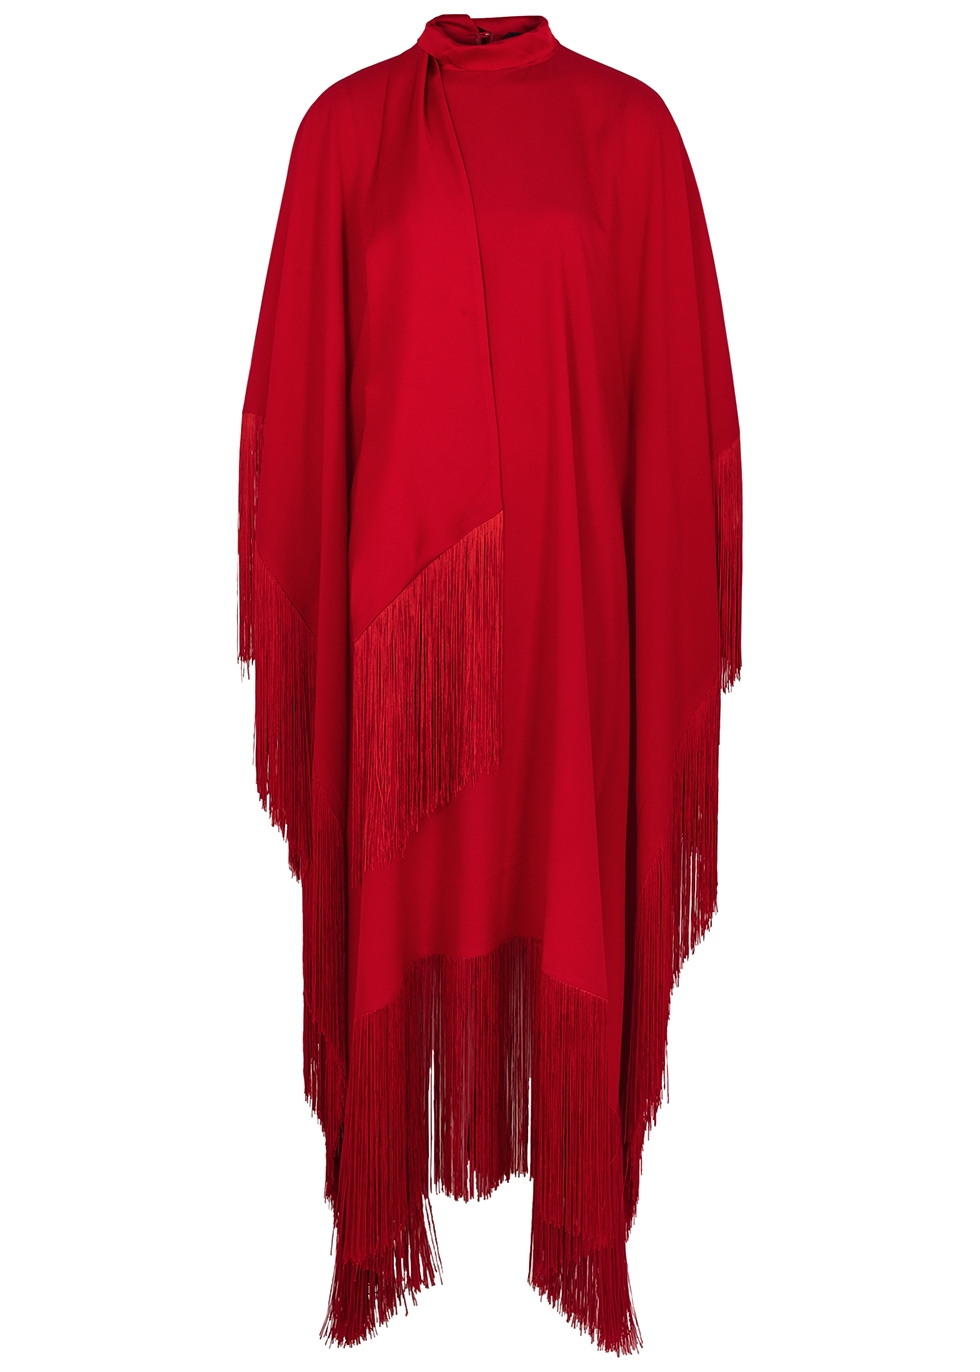 Mrs. Ross red fringe-trimmed dress